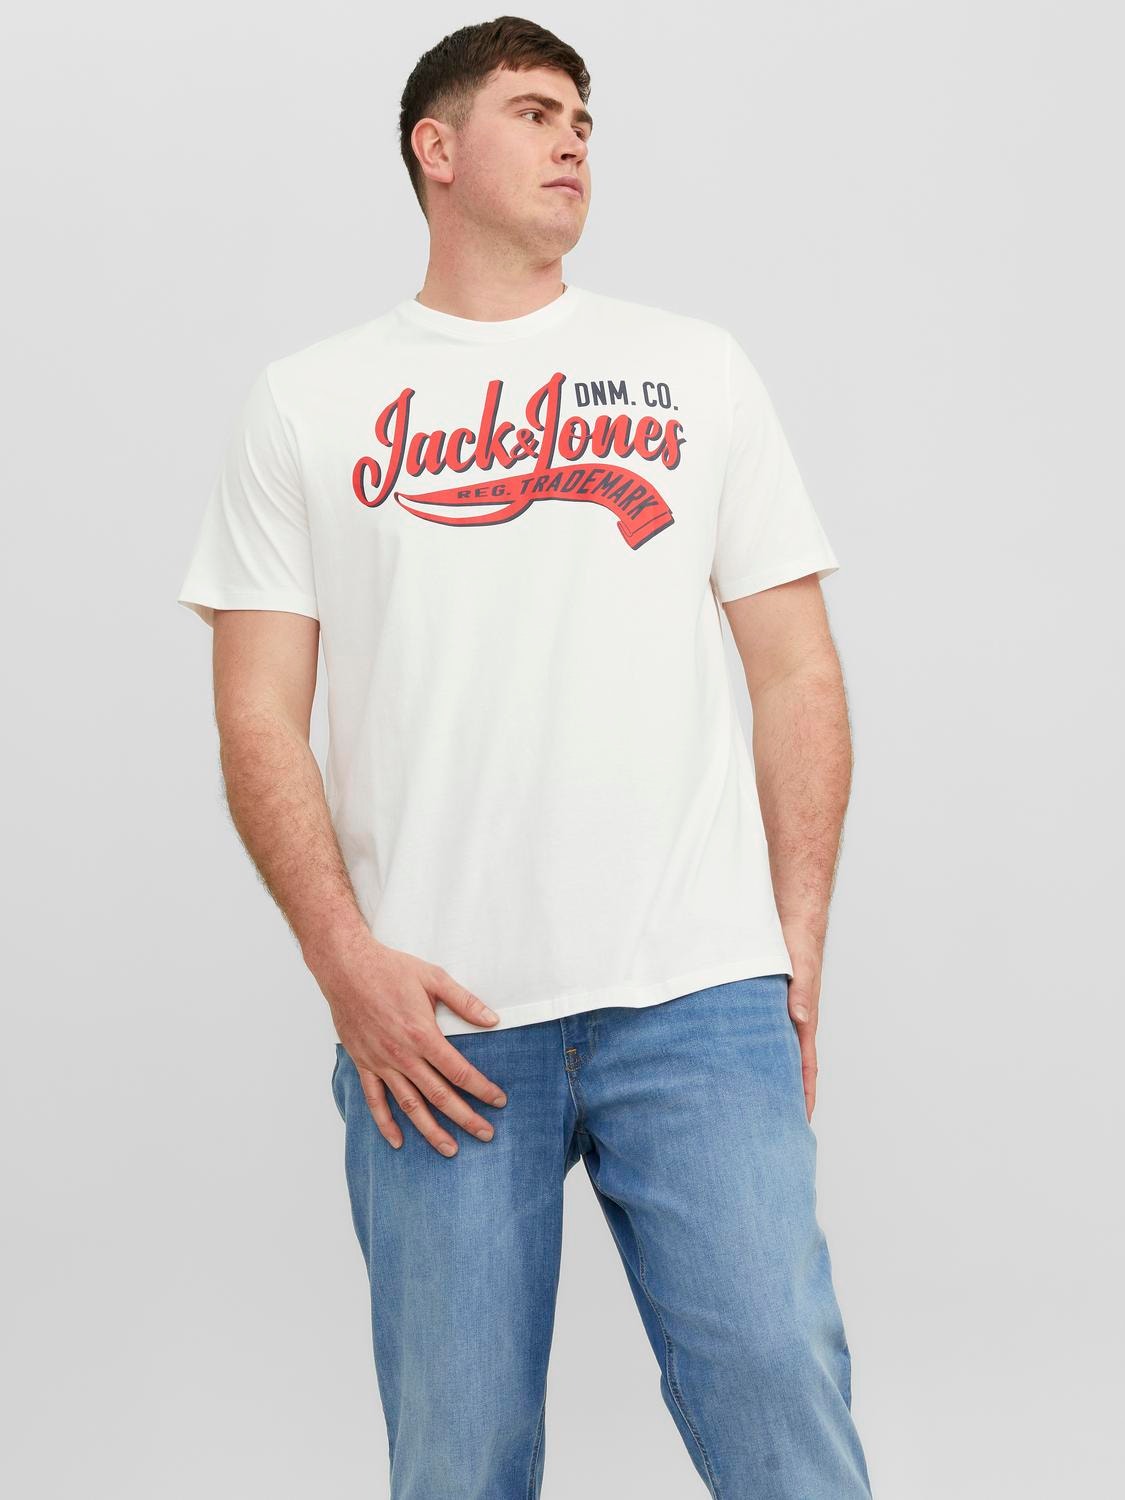 Jack & Jones Plus Size T-shirt Logo -Cloud Dancer - 12243611